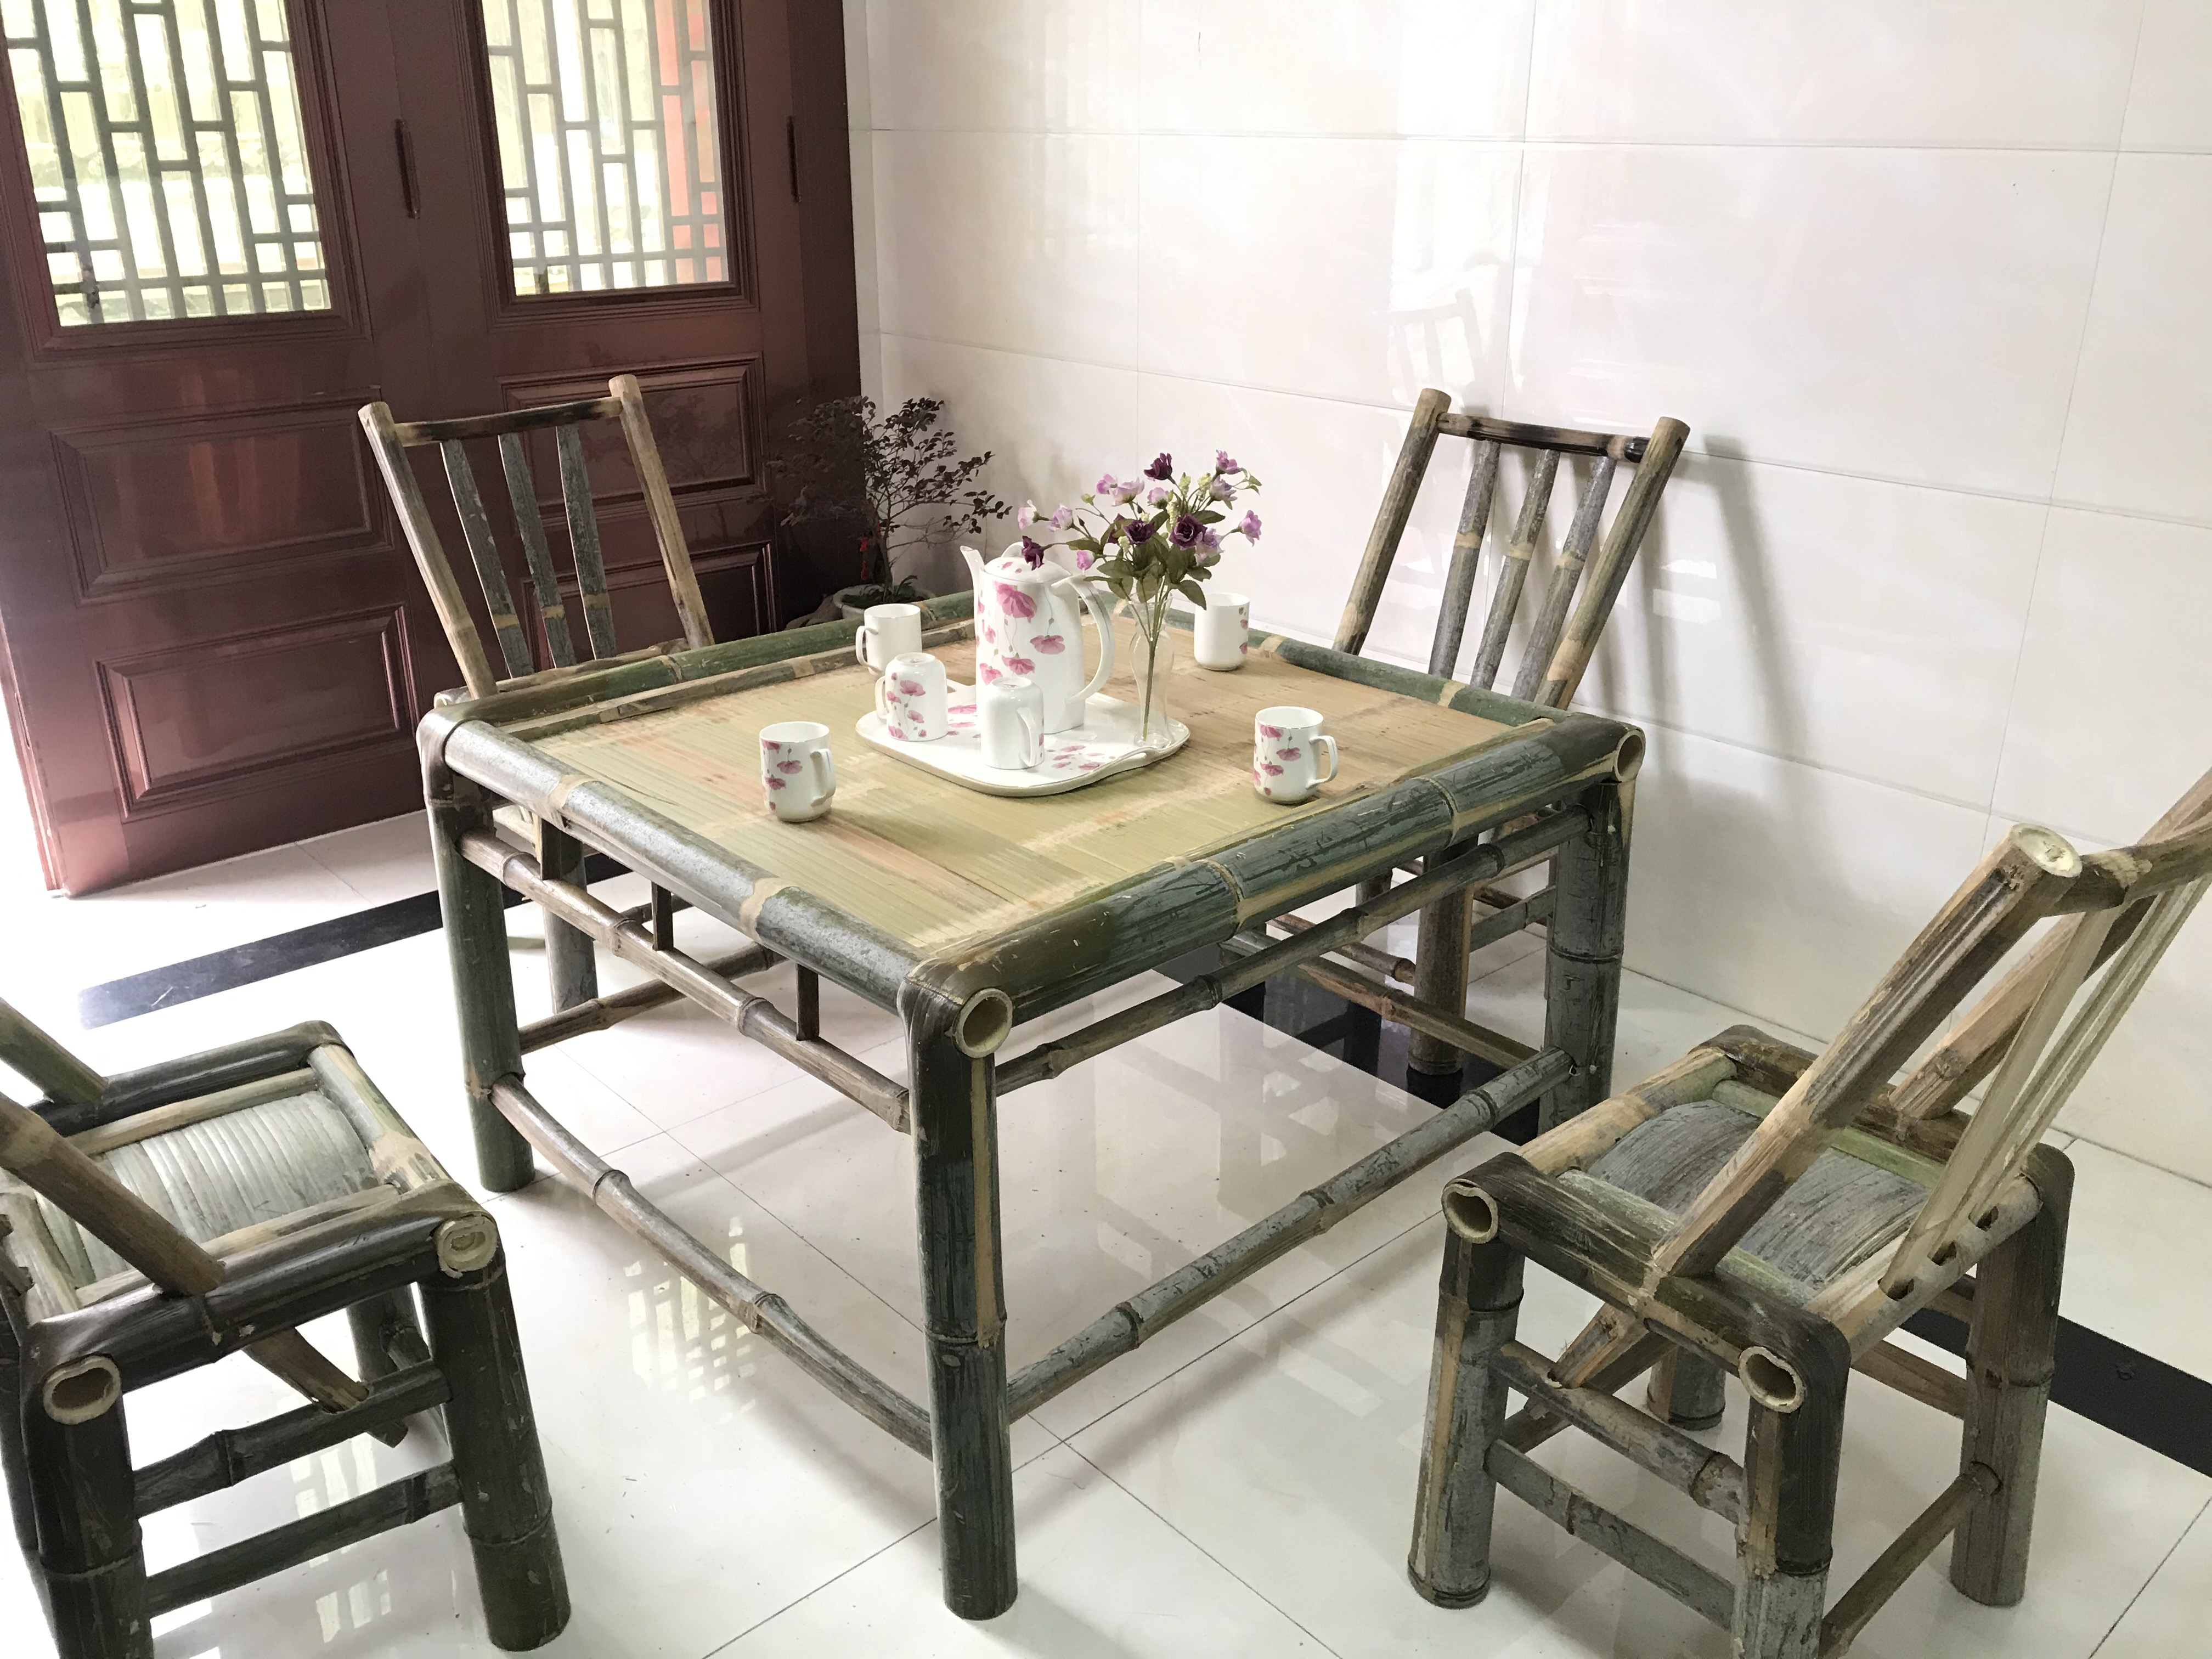 竹茶桌椅组合竹子桌子家用方桌中式竹餐桌复古禅意茶室家具竹茶几